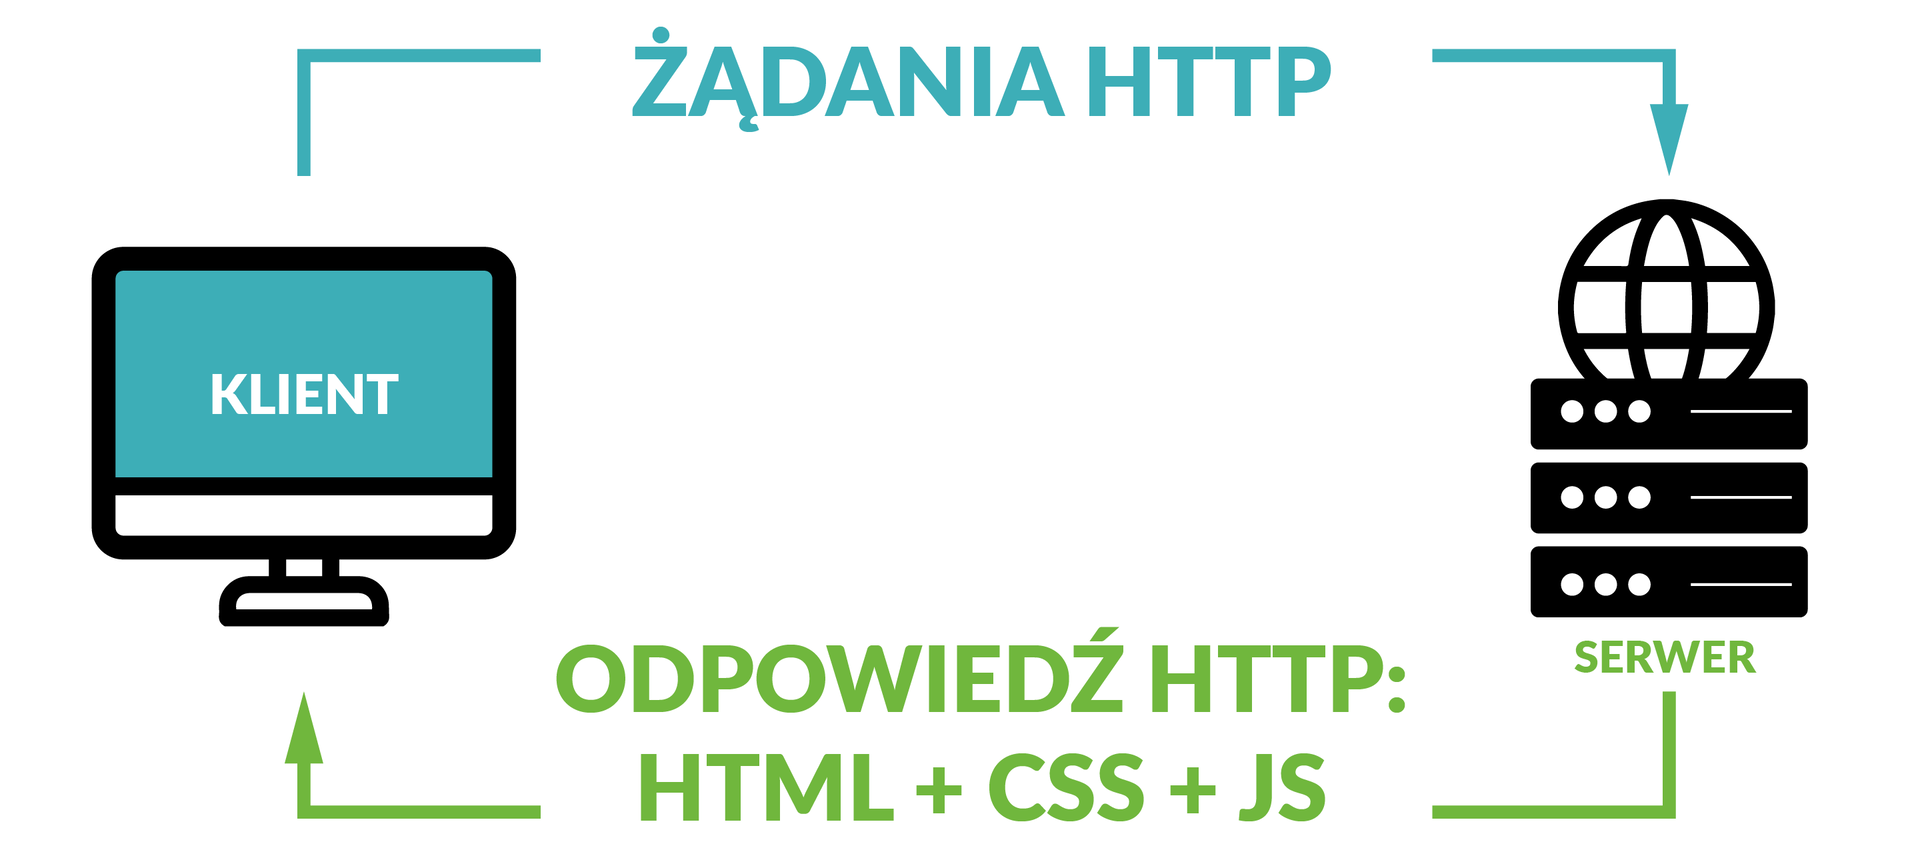 Ilustracja przedstawia komunikację klient-serwer.  Po lewej stronie znajduje się ikona monitora z napisem: klient.  Od klienta wychodzi strzałka podpisana jako: ŻĄDANIA HTTP.  Strzałka ta dąży do ikony internetu i urządzeń sieciowych.  Podpisana jest jako: serwer.  Od ikony tej wychodzi strzałka podpisana jako: Odpowiedź HTTP: HTML + CSS + JS.  Strzałka ta dąży z powrotem do monitora z podpisem: klient.  